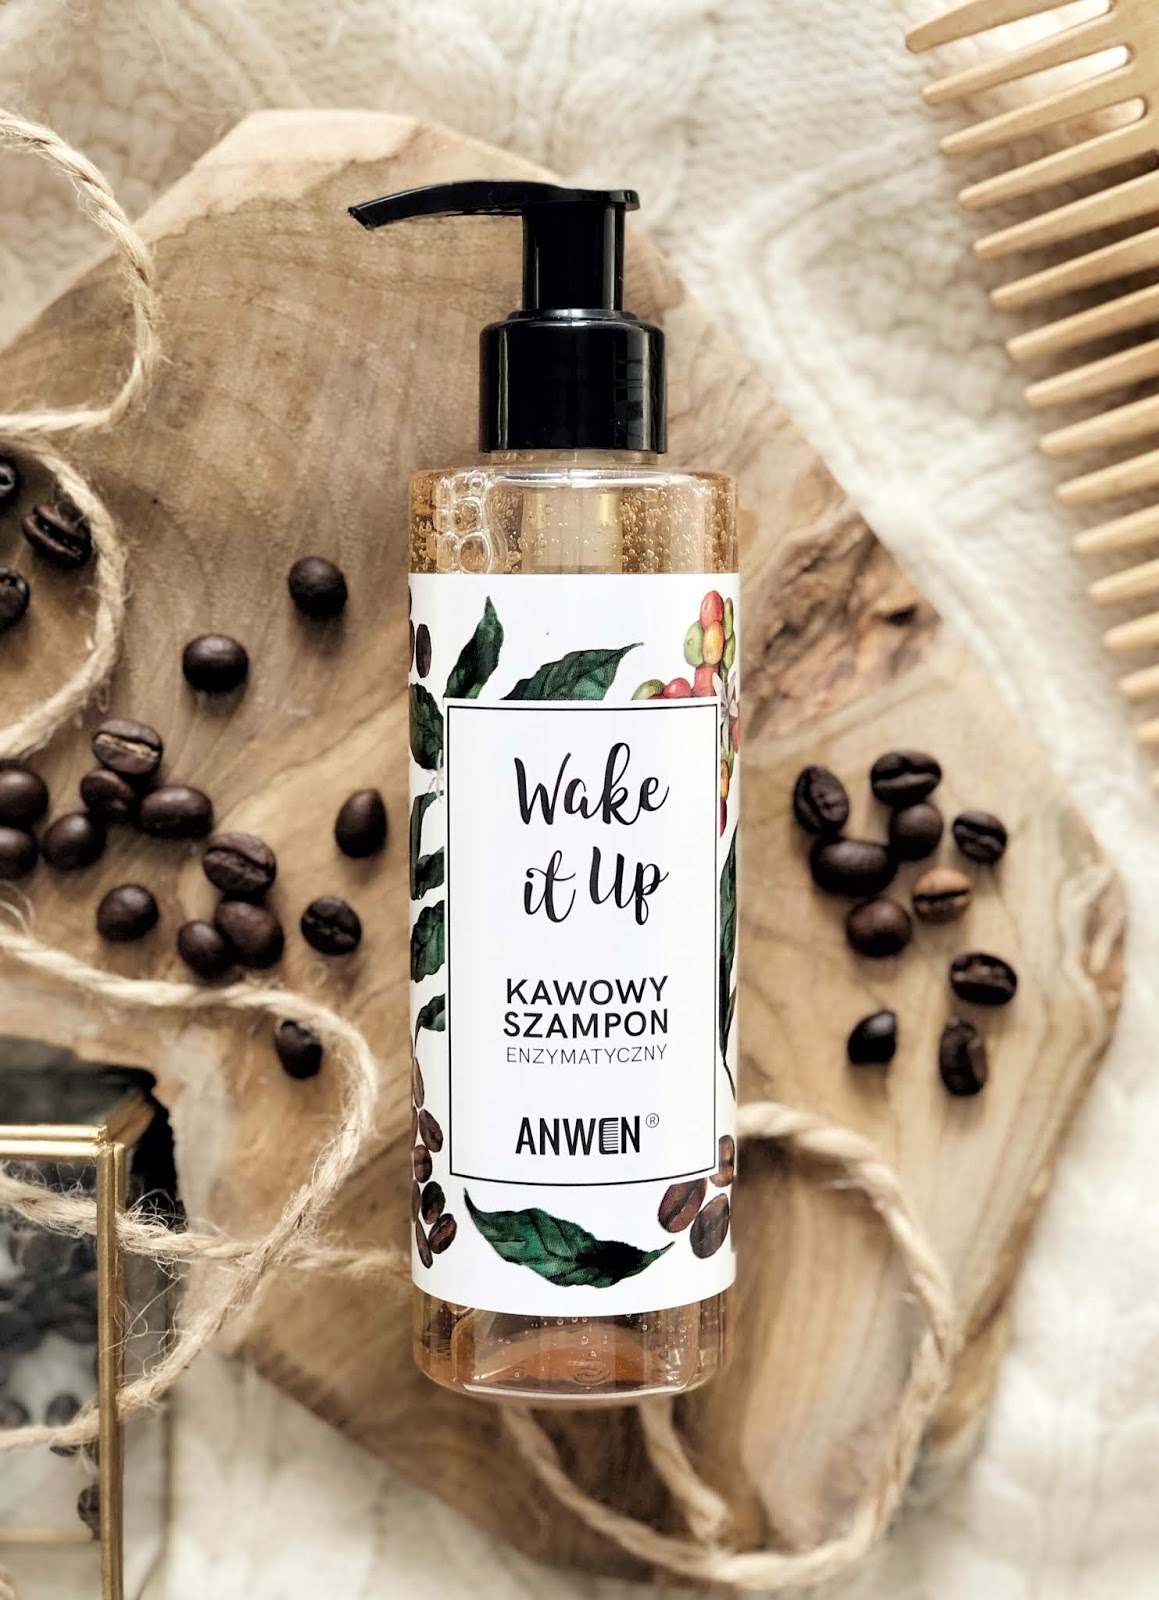 Wake-It-Up-enzymatyczny-szampon-kawowy-Anwen-opinia